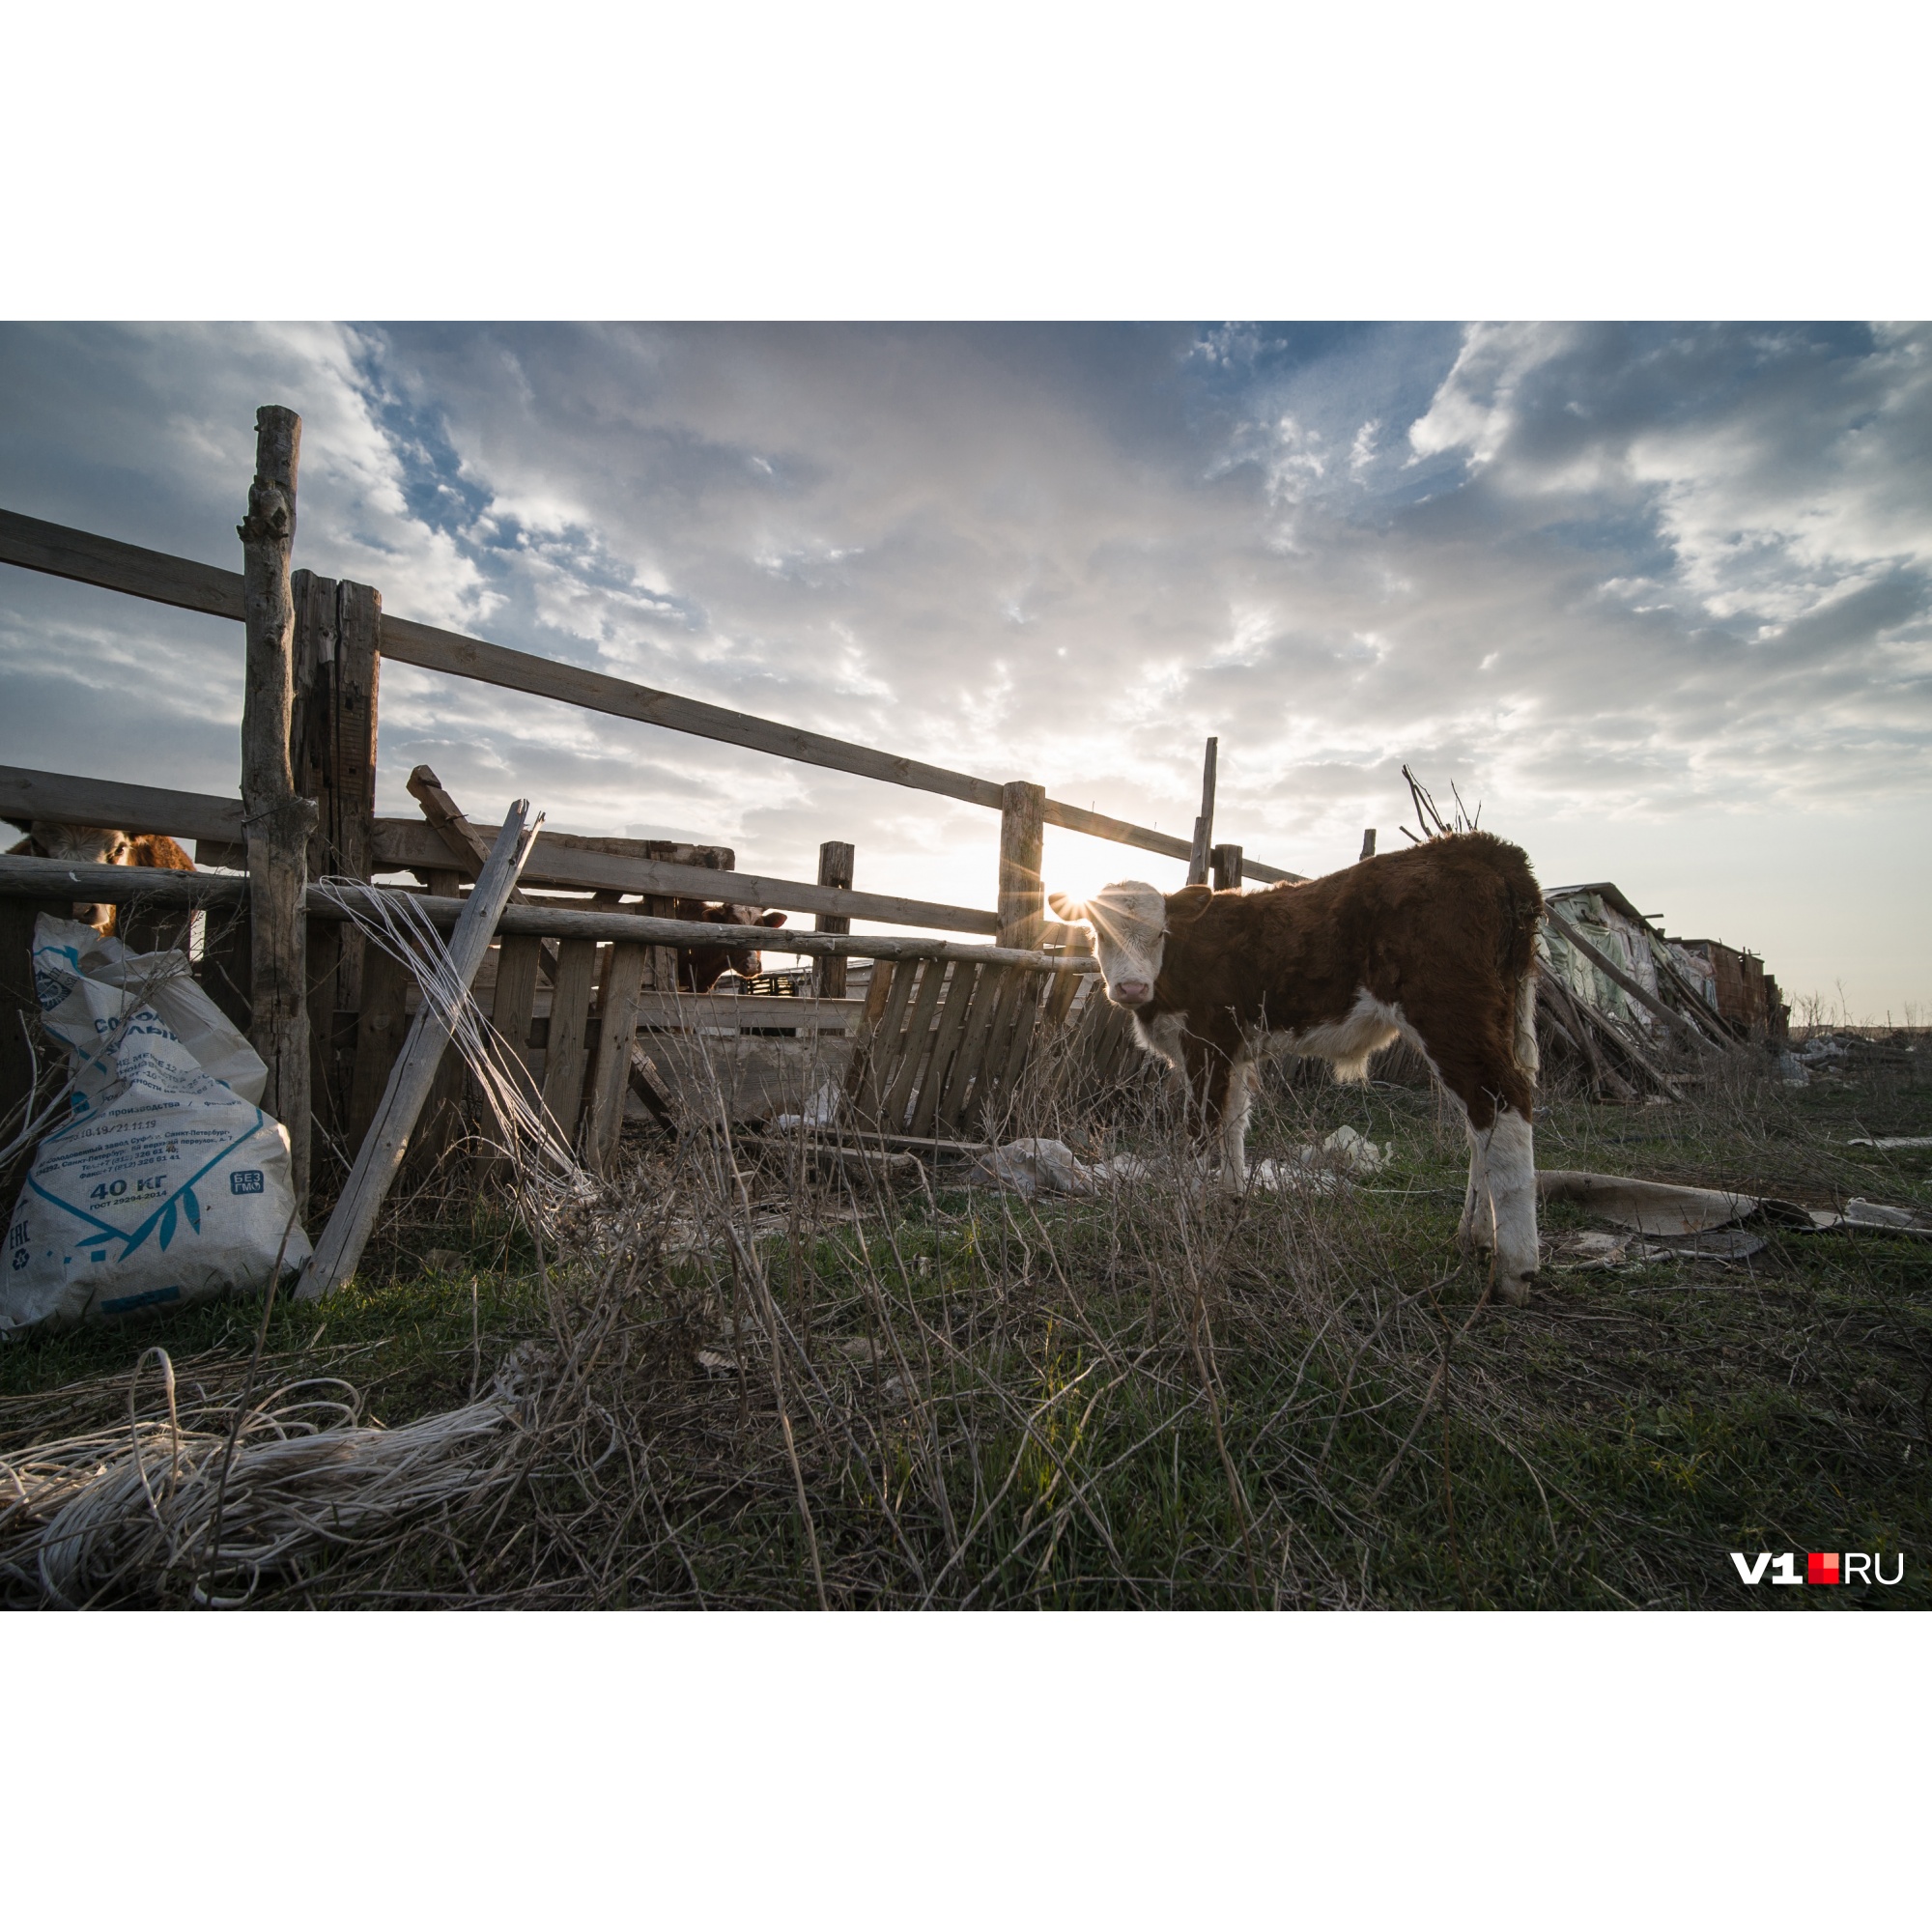 Фотограф, бросивший из-за коронавируса Волгоград, показал обворожительную жизнь в глухой деревне